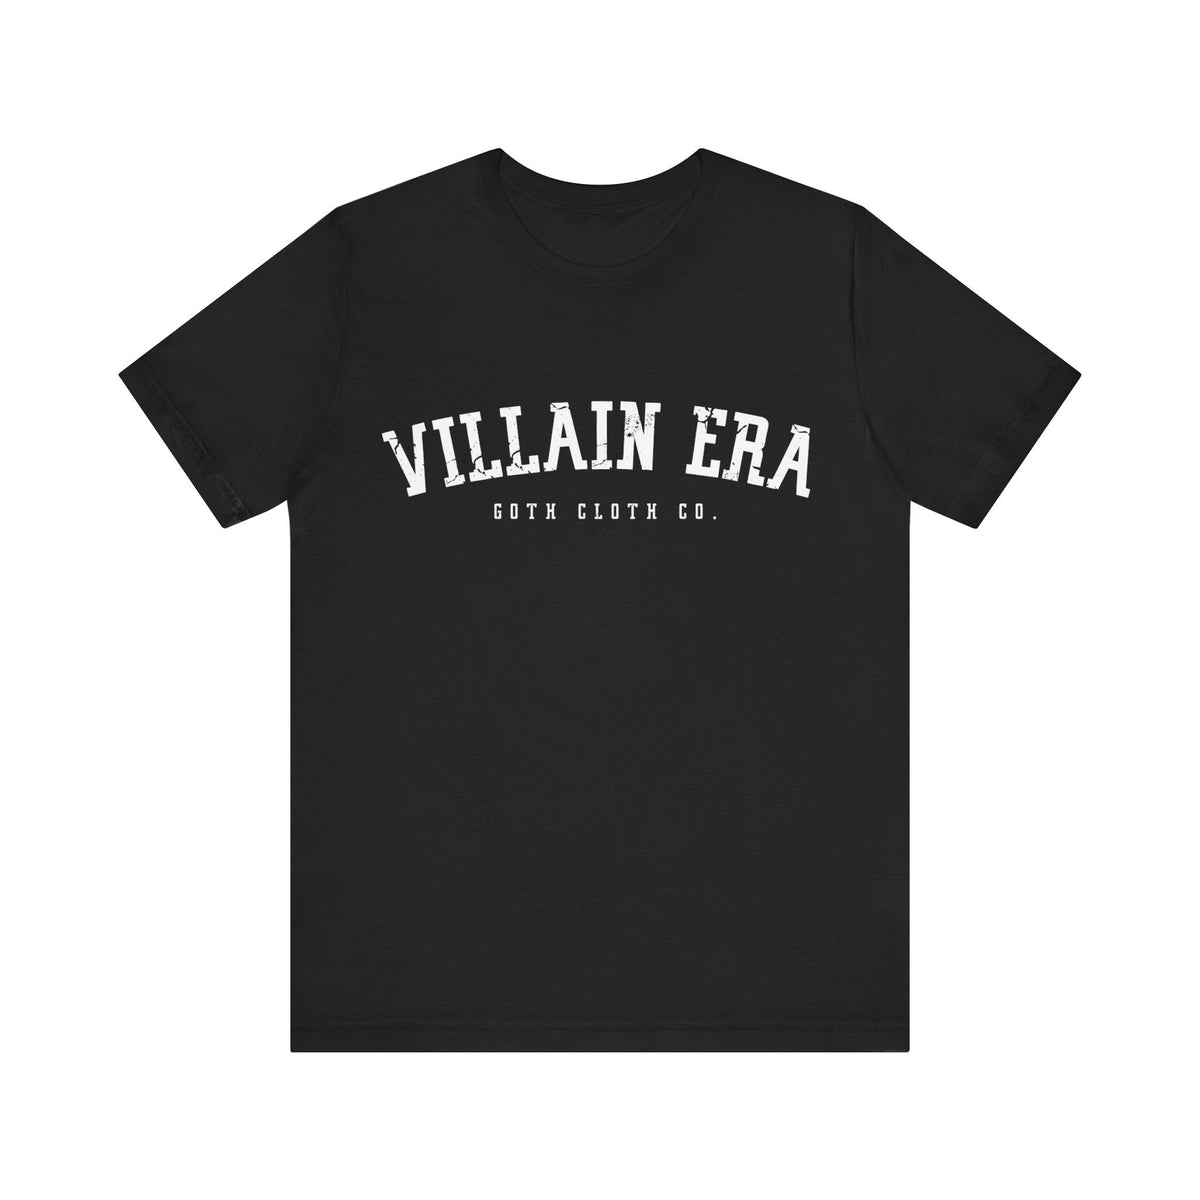 Villain Era Short Sleeve Tee - Goth Cloth Co.T - Shirt12767558742204555080